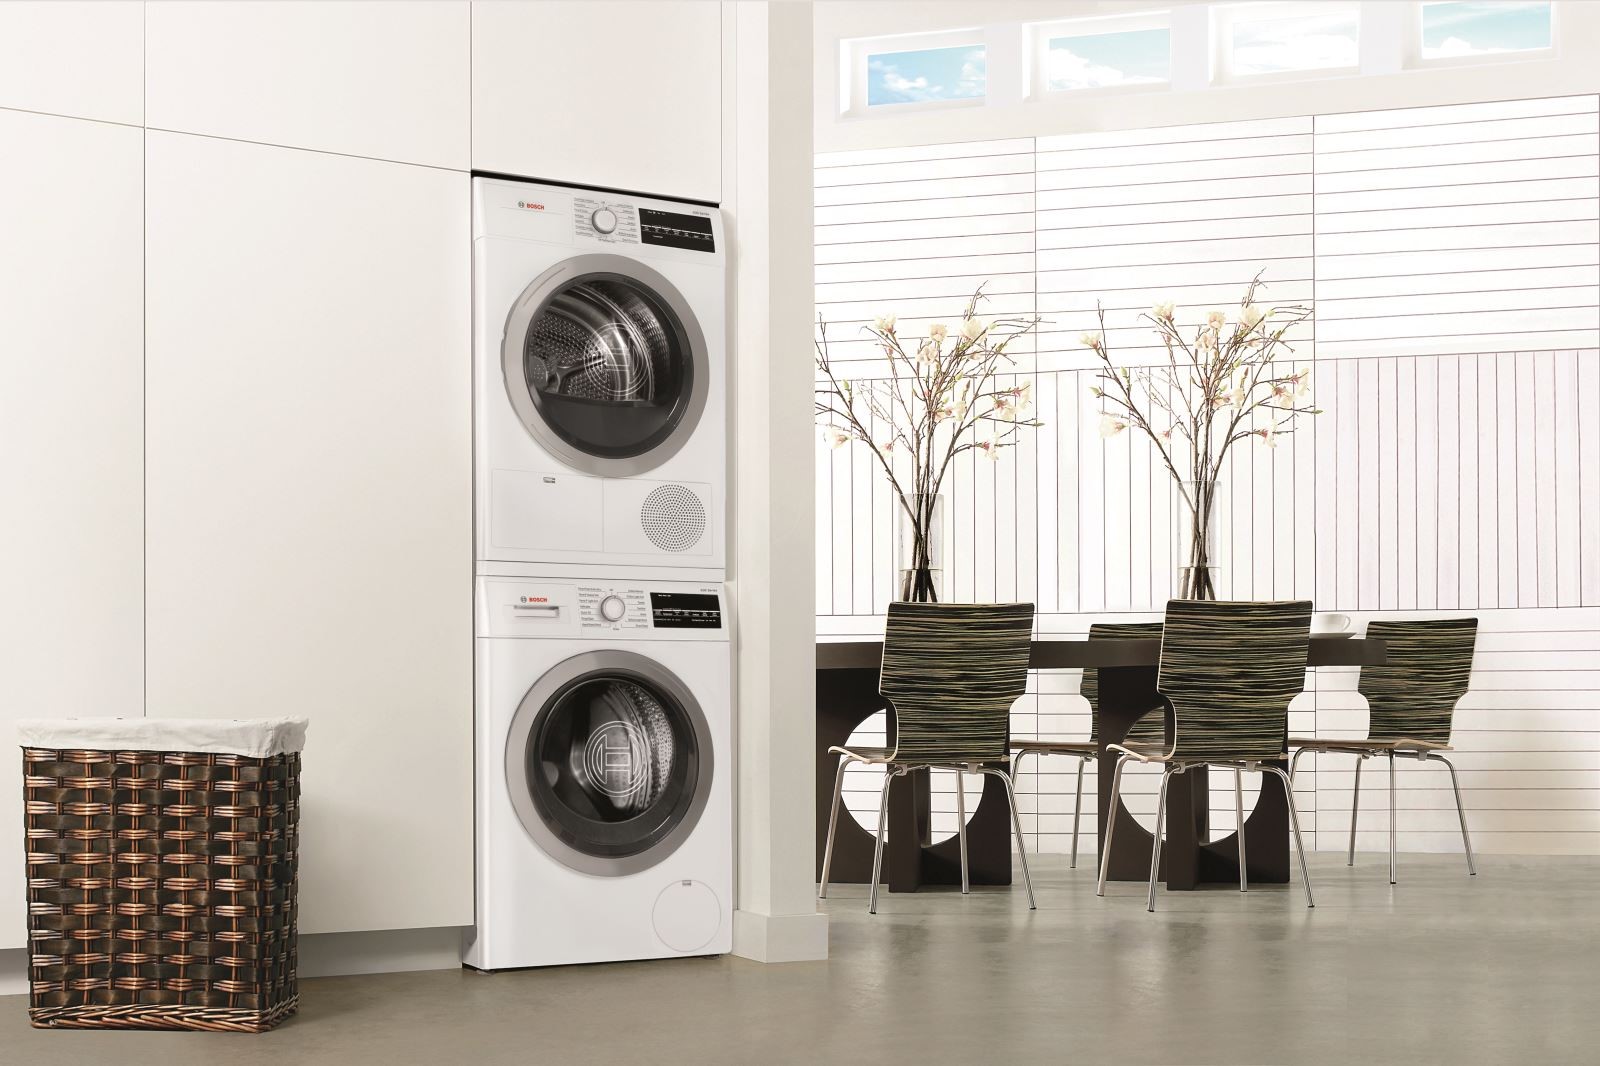 Máy giặt sấy Bosch là thiết bị hữu ích và cần thiết trong gia đình